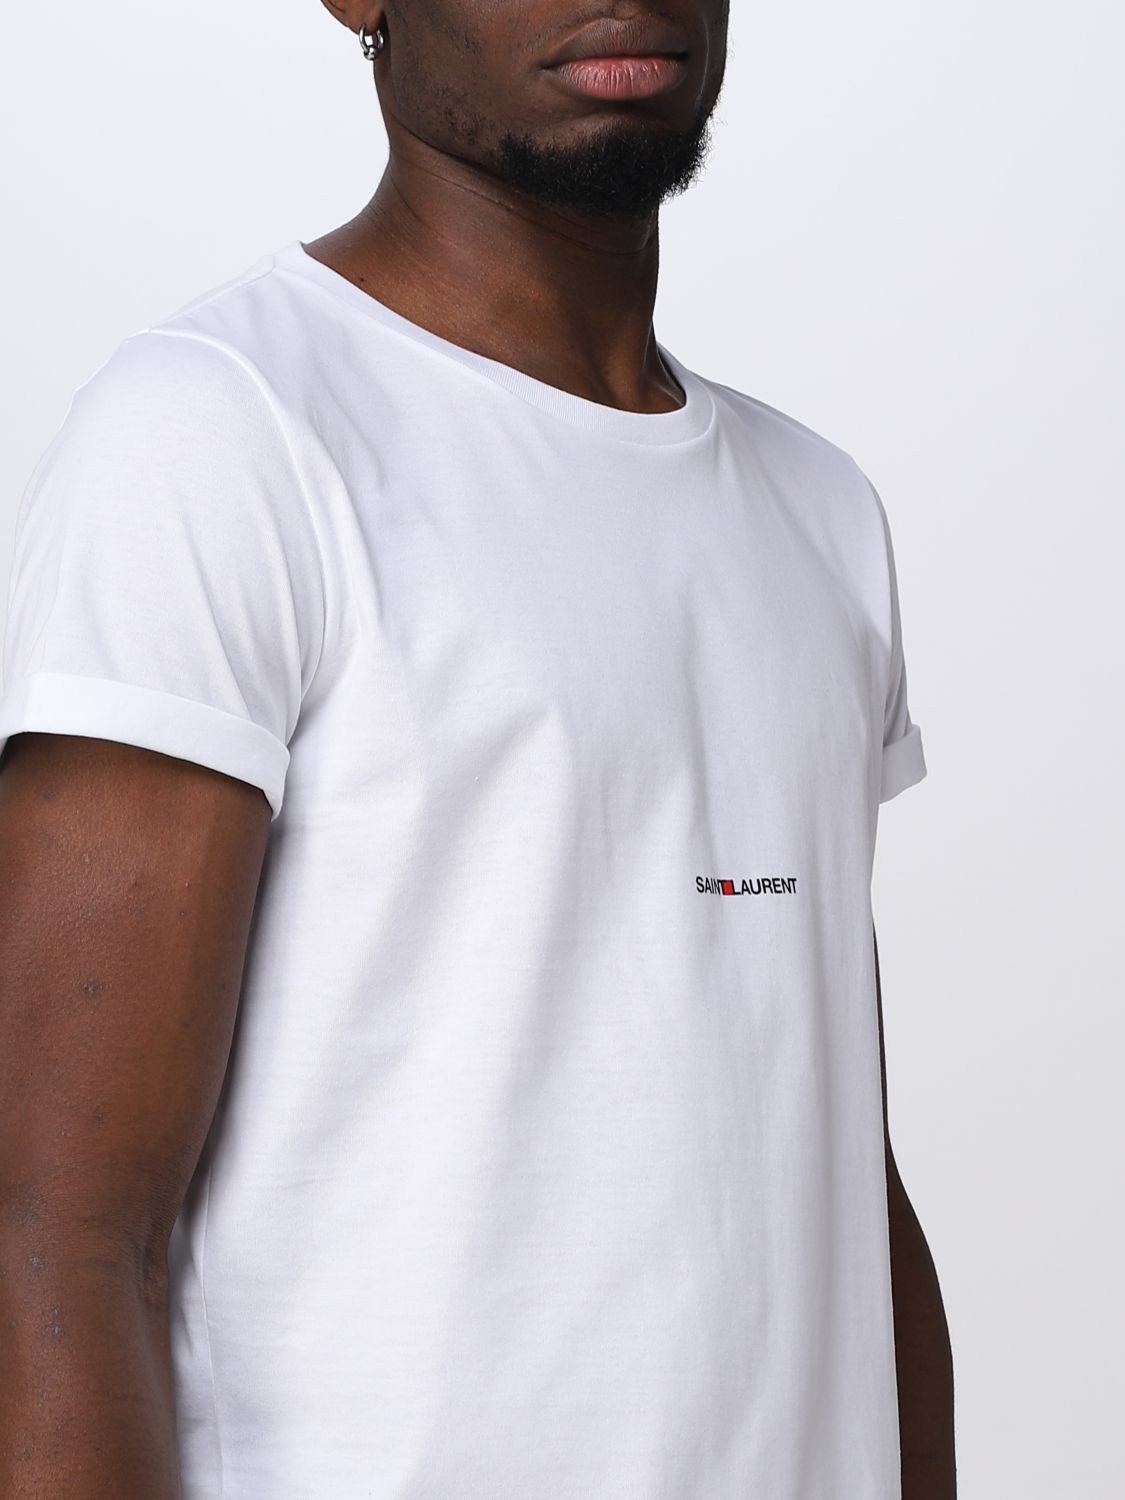 T-shirt Saint Laurent: T-shirt Saint Laurent in cotone bianco 5